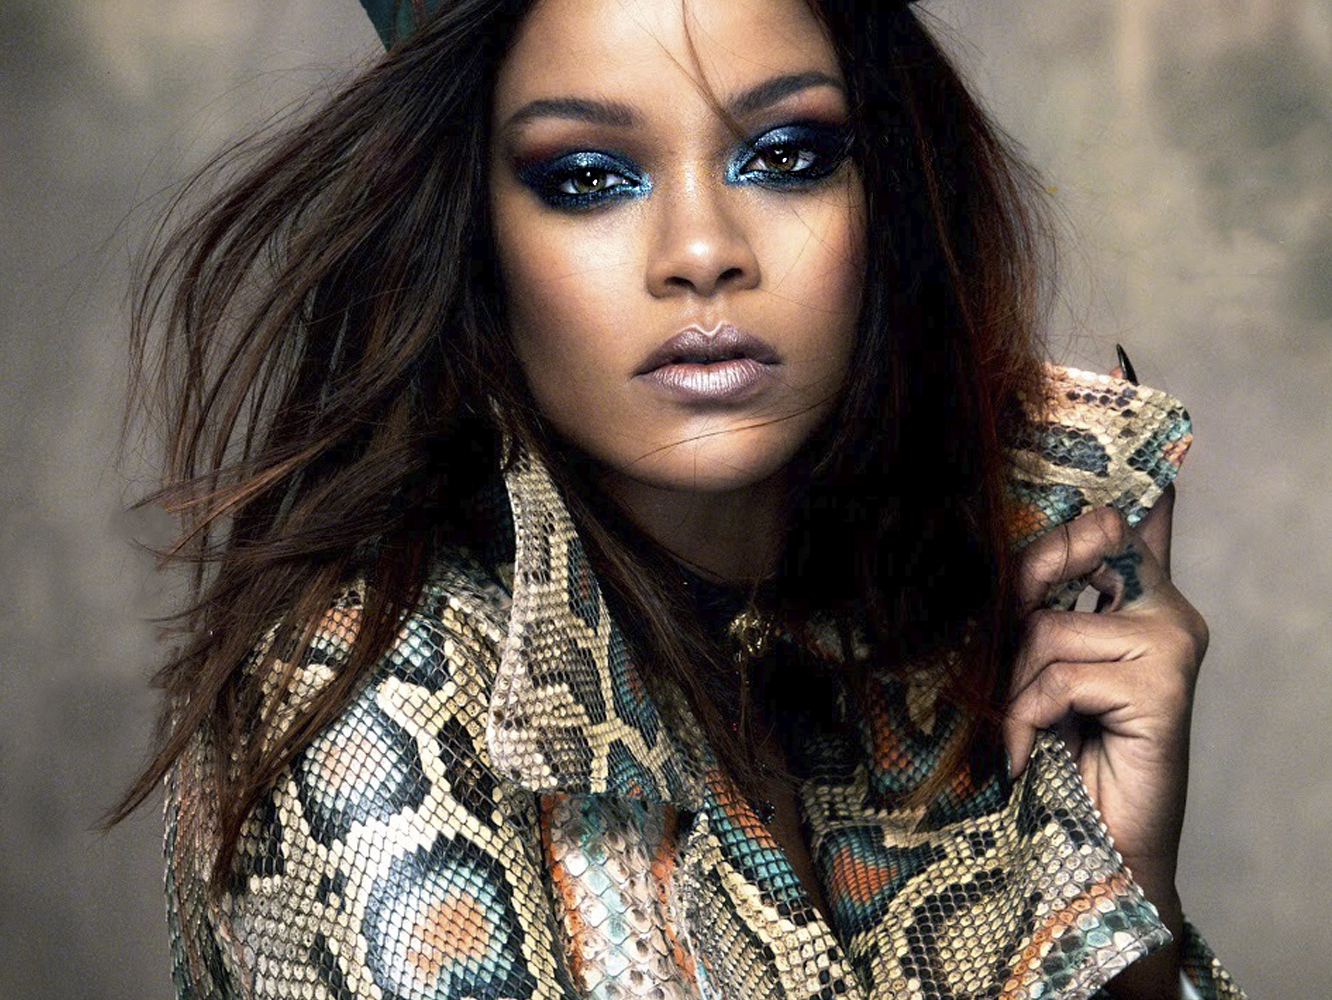  500 canciones para los dos nuevos álbumes de Rihanna: uno pop y uno dancehall